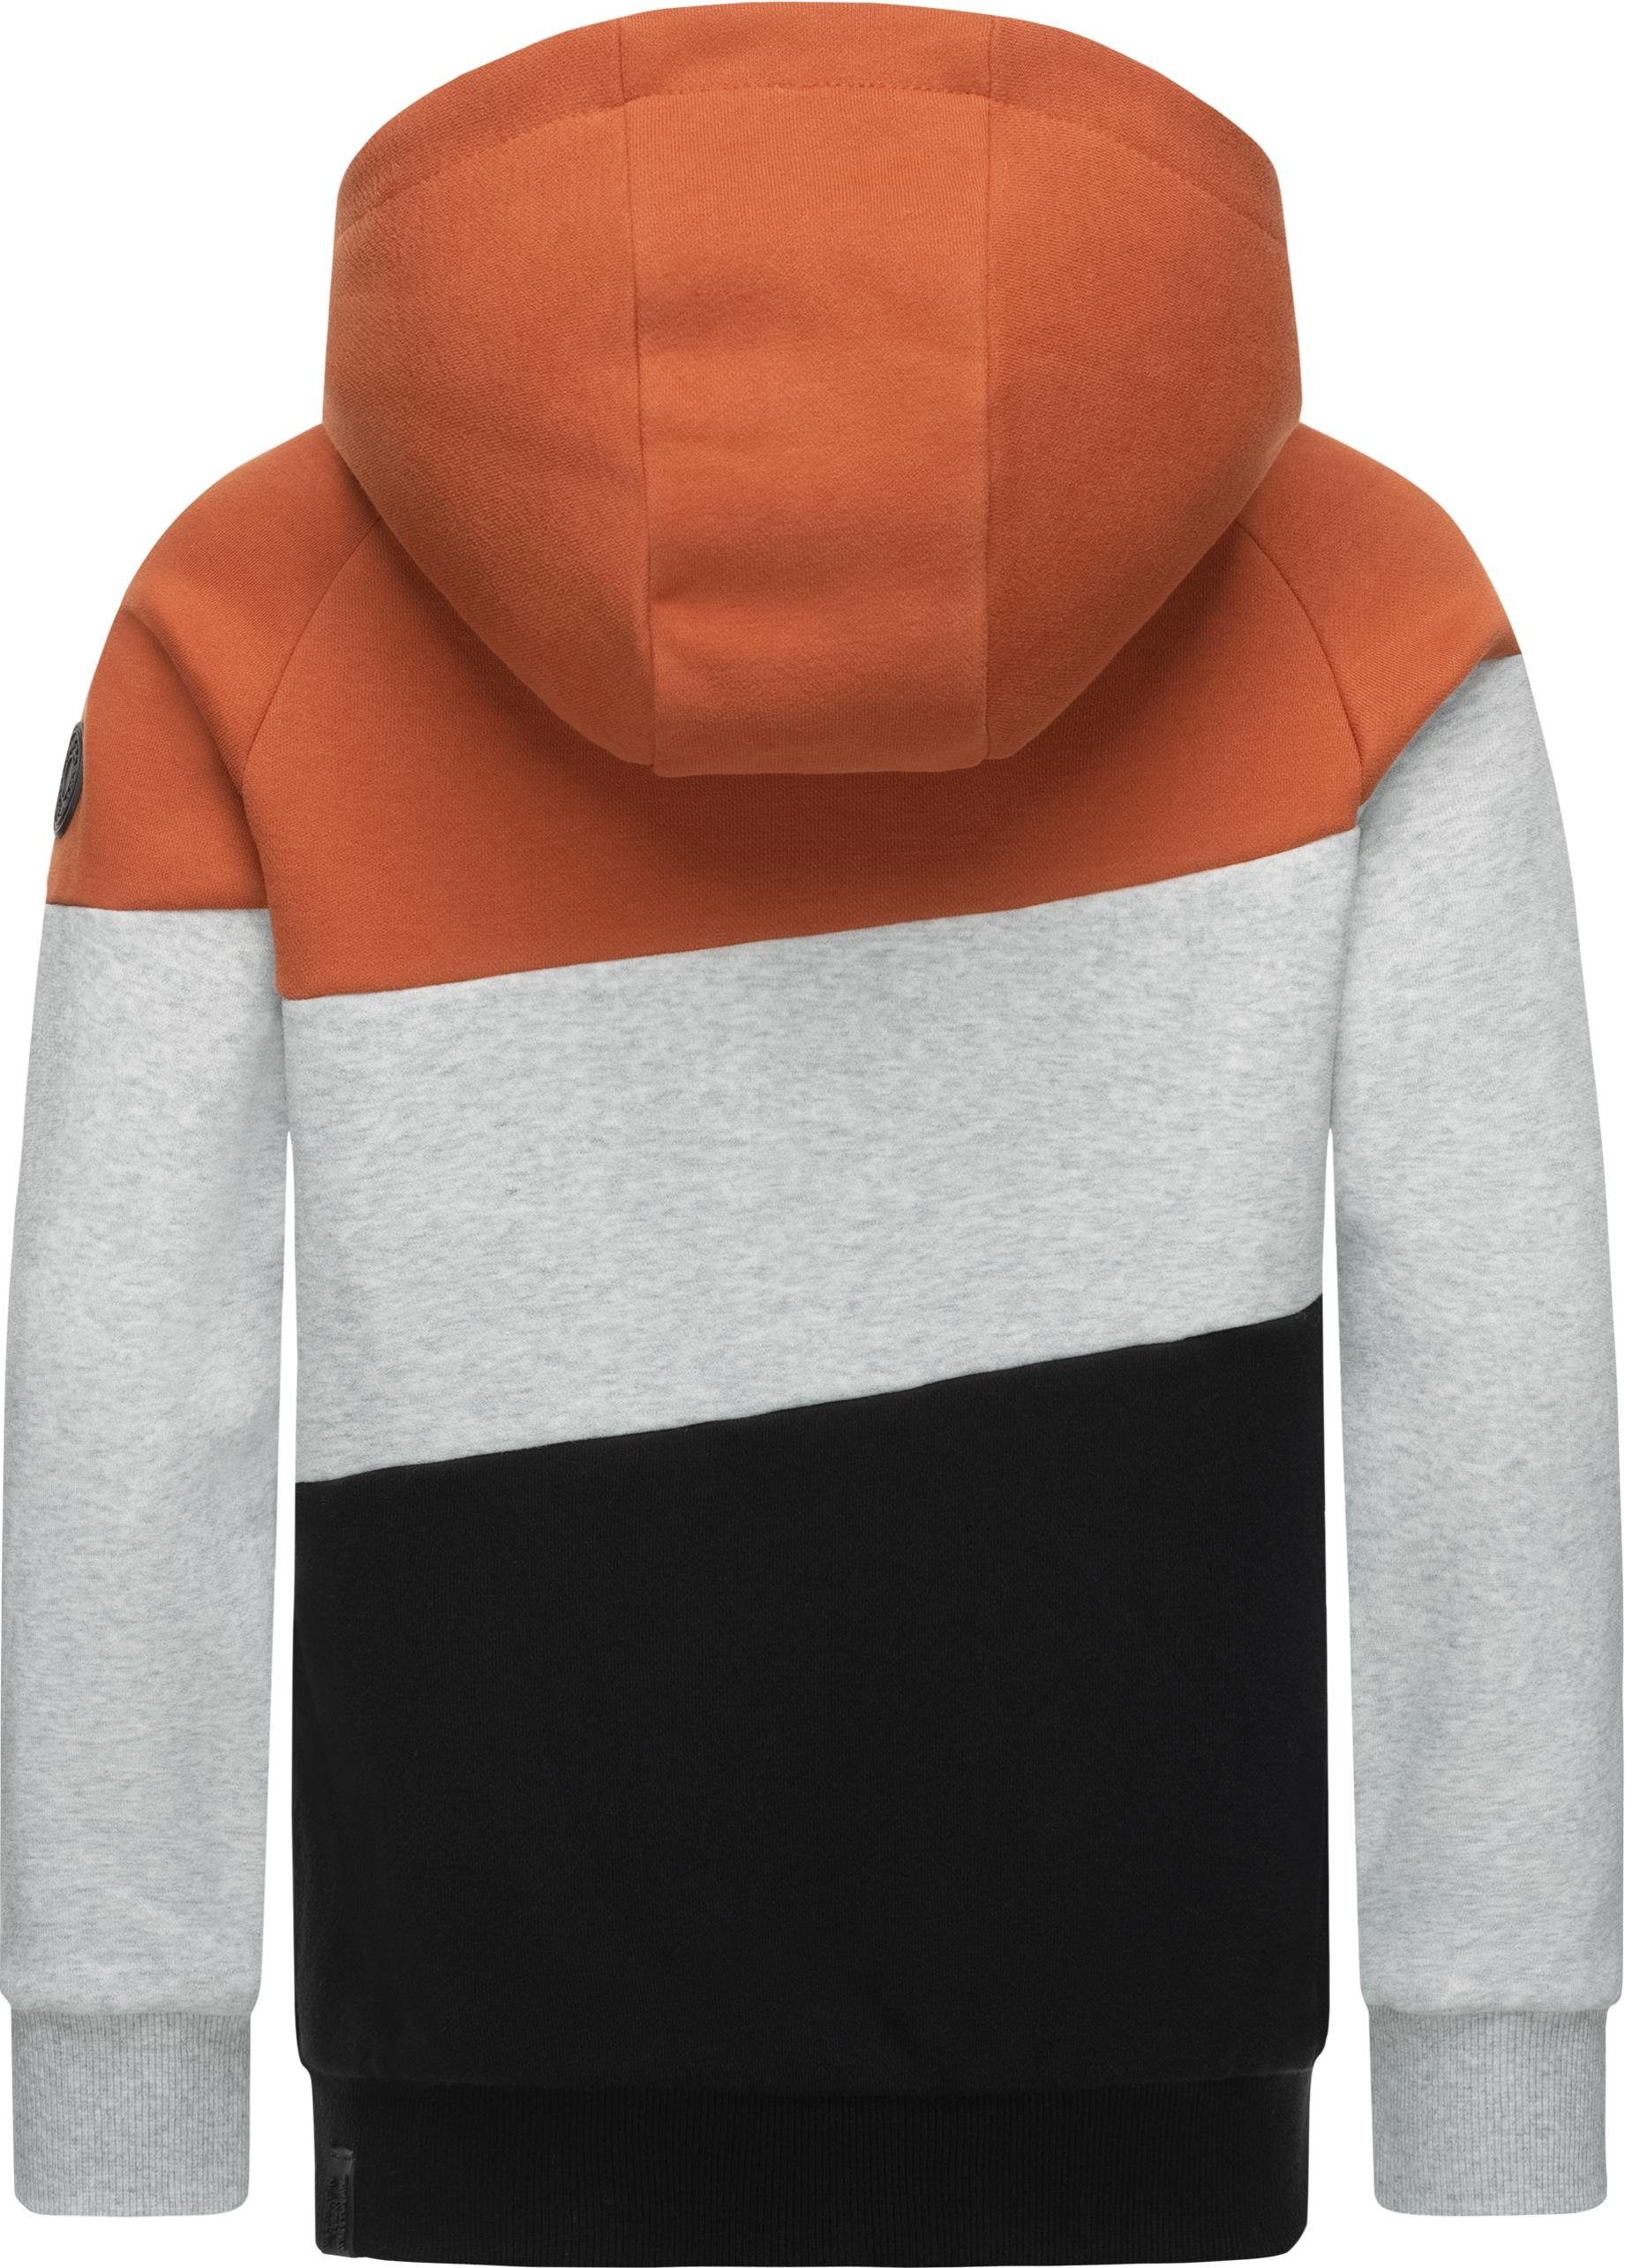 Kapuzenpullover orange Kapuzensweater Kinder Jungen Ragwear Kapuze mit großer Vendio